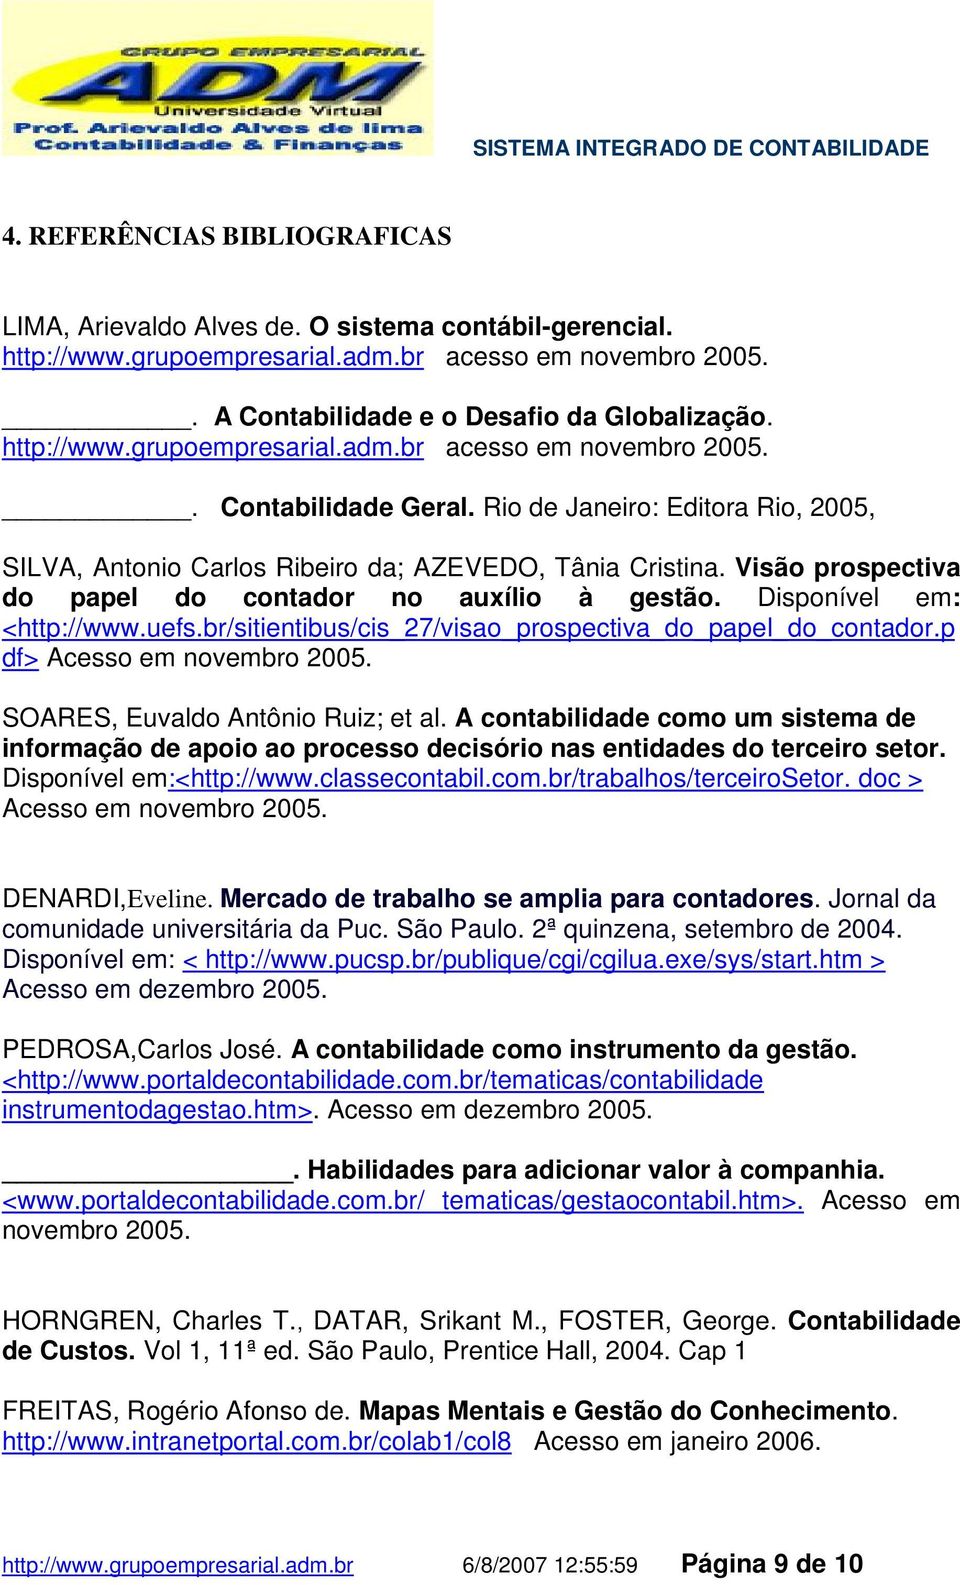 Visão prospectiva do papel do contador no auxílio à gestão. Disponível em: <http://www.uefs.br/sitientibus/cis_27/visao_prospectiva_do_papel_do_contador.p df> Acesso em novembro 2005.